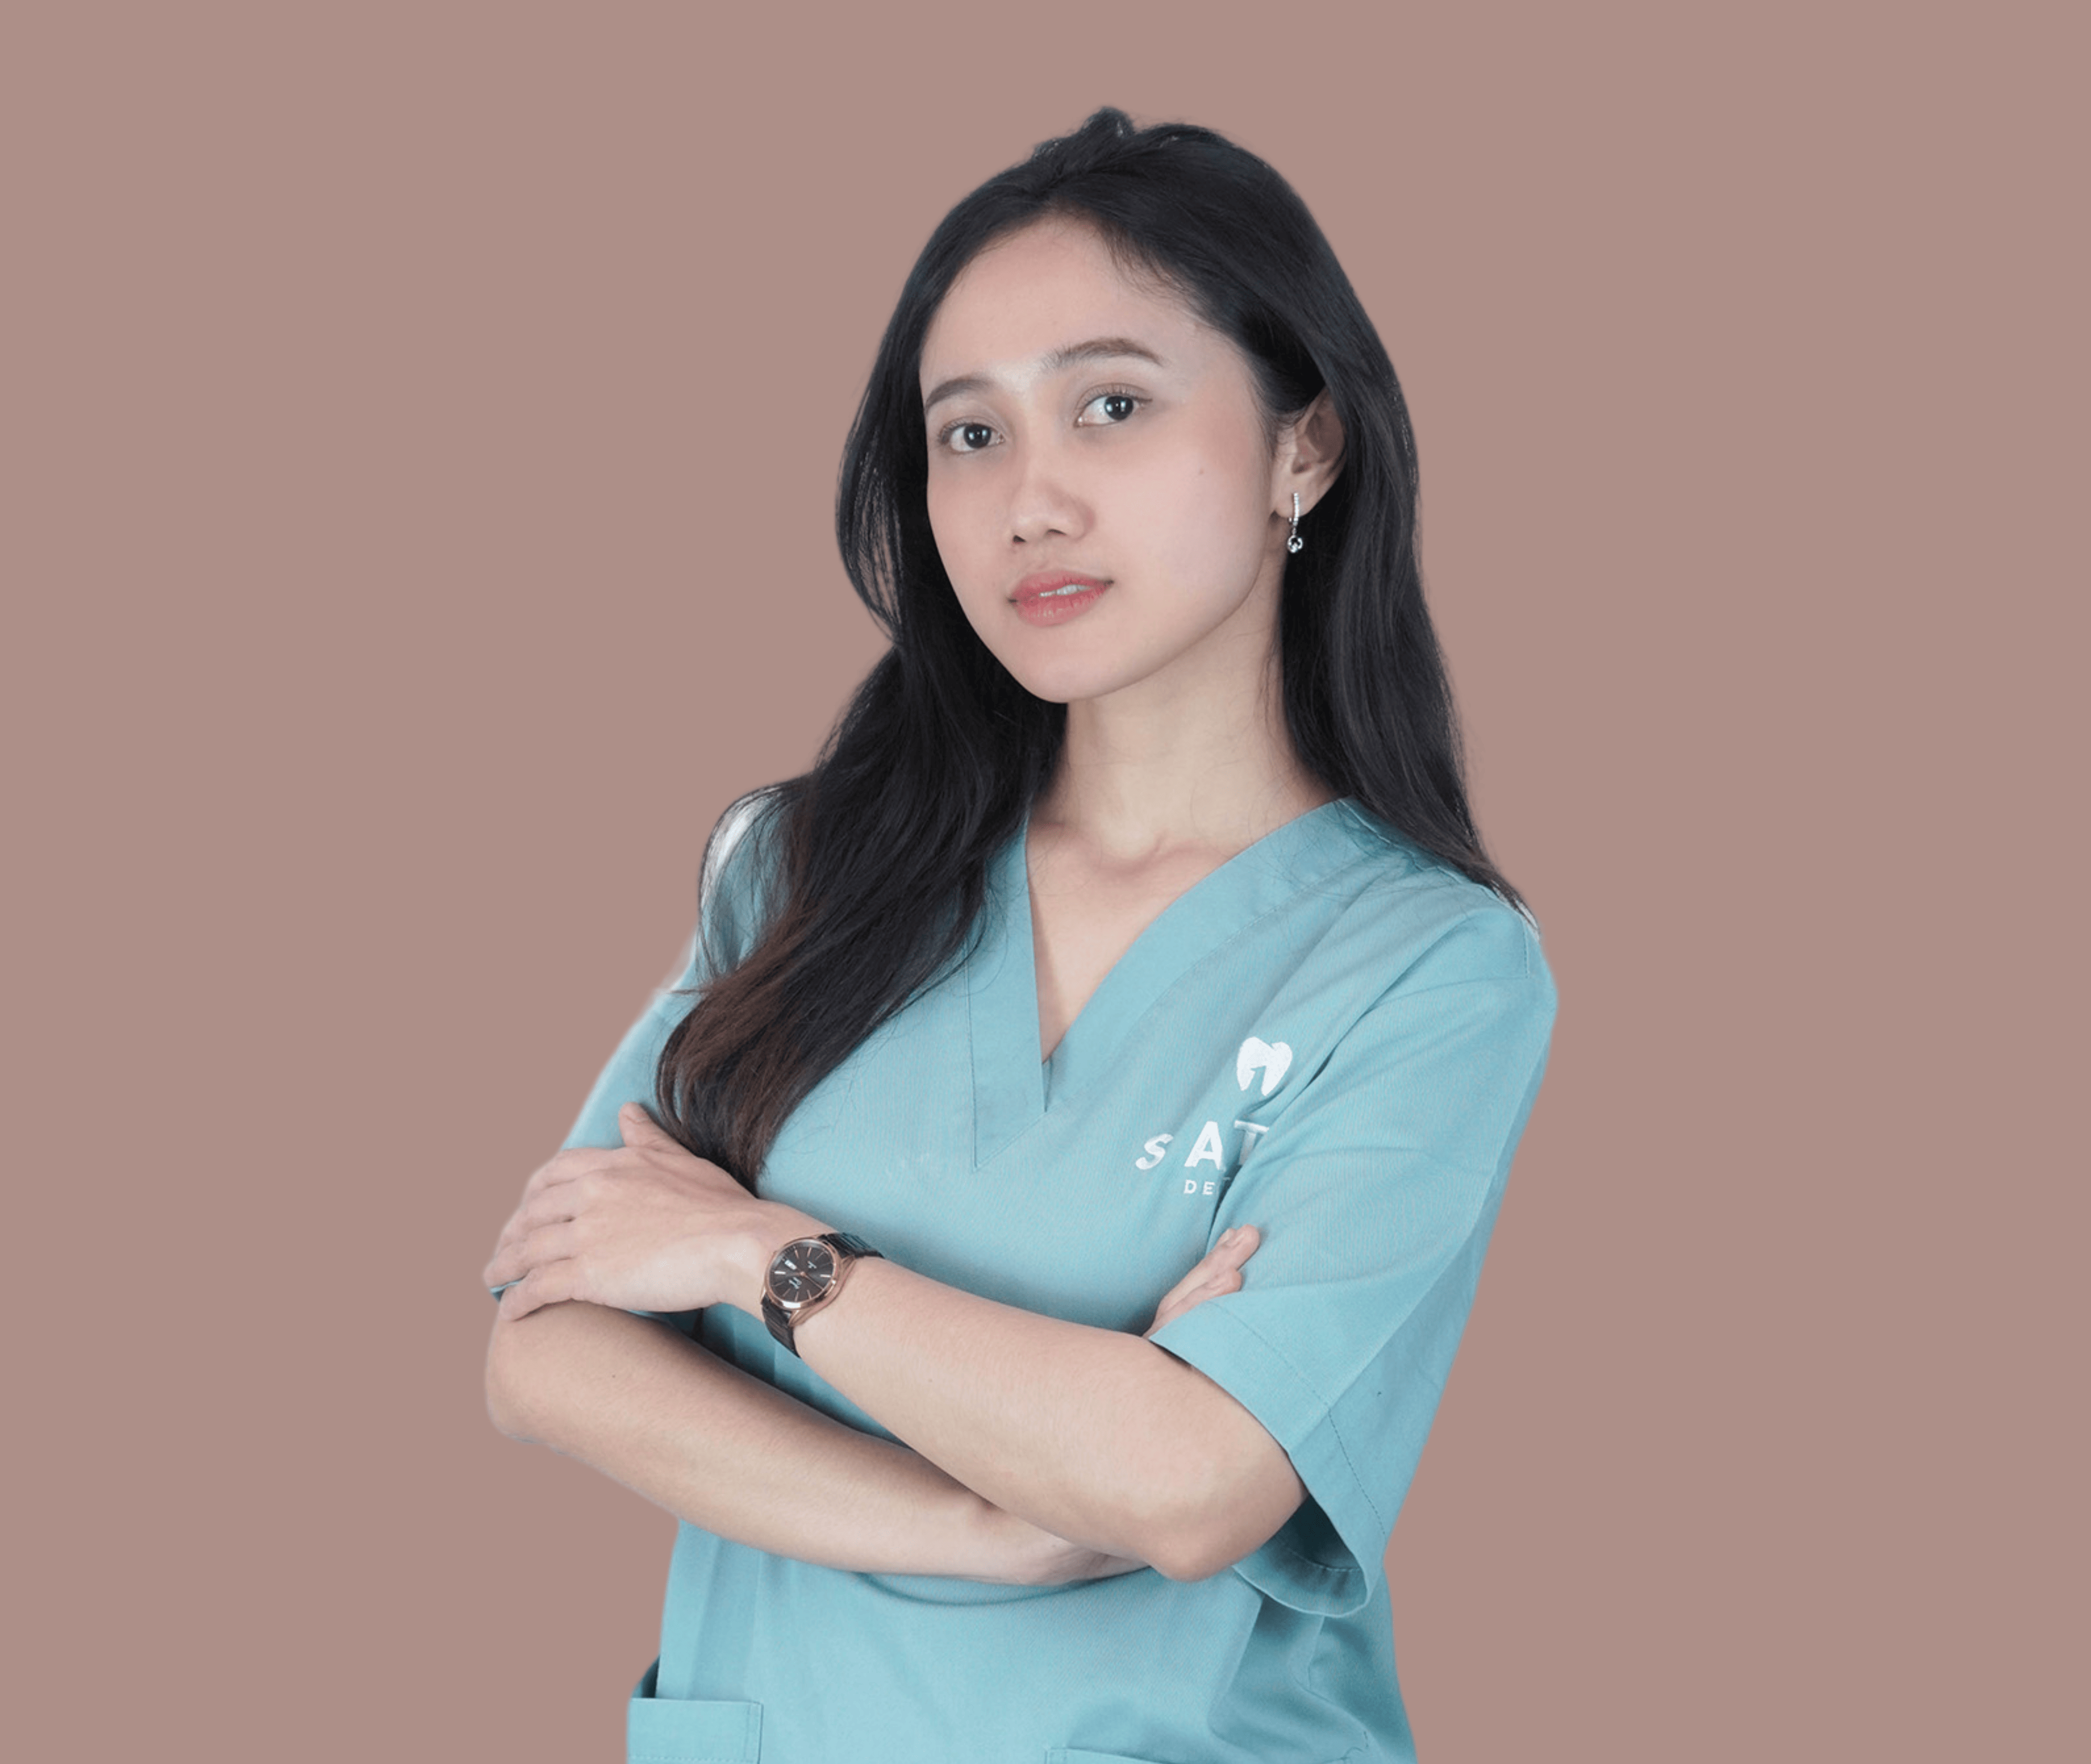 Klinik-Gigi-Satu-Dental-Dentist-Drg. Chrystina Kusuma